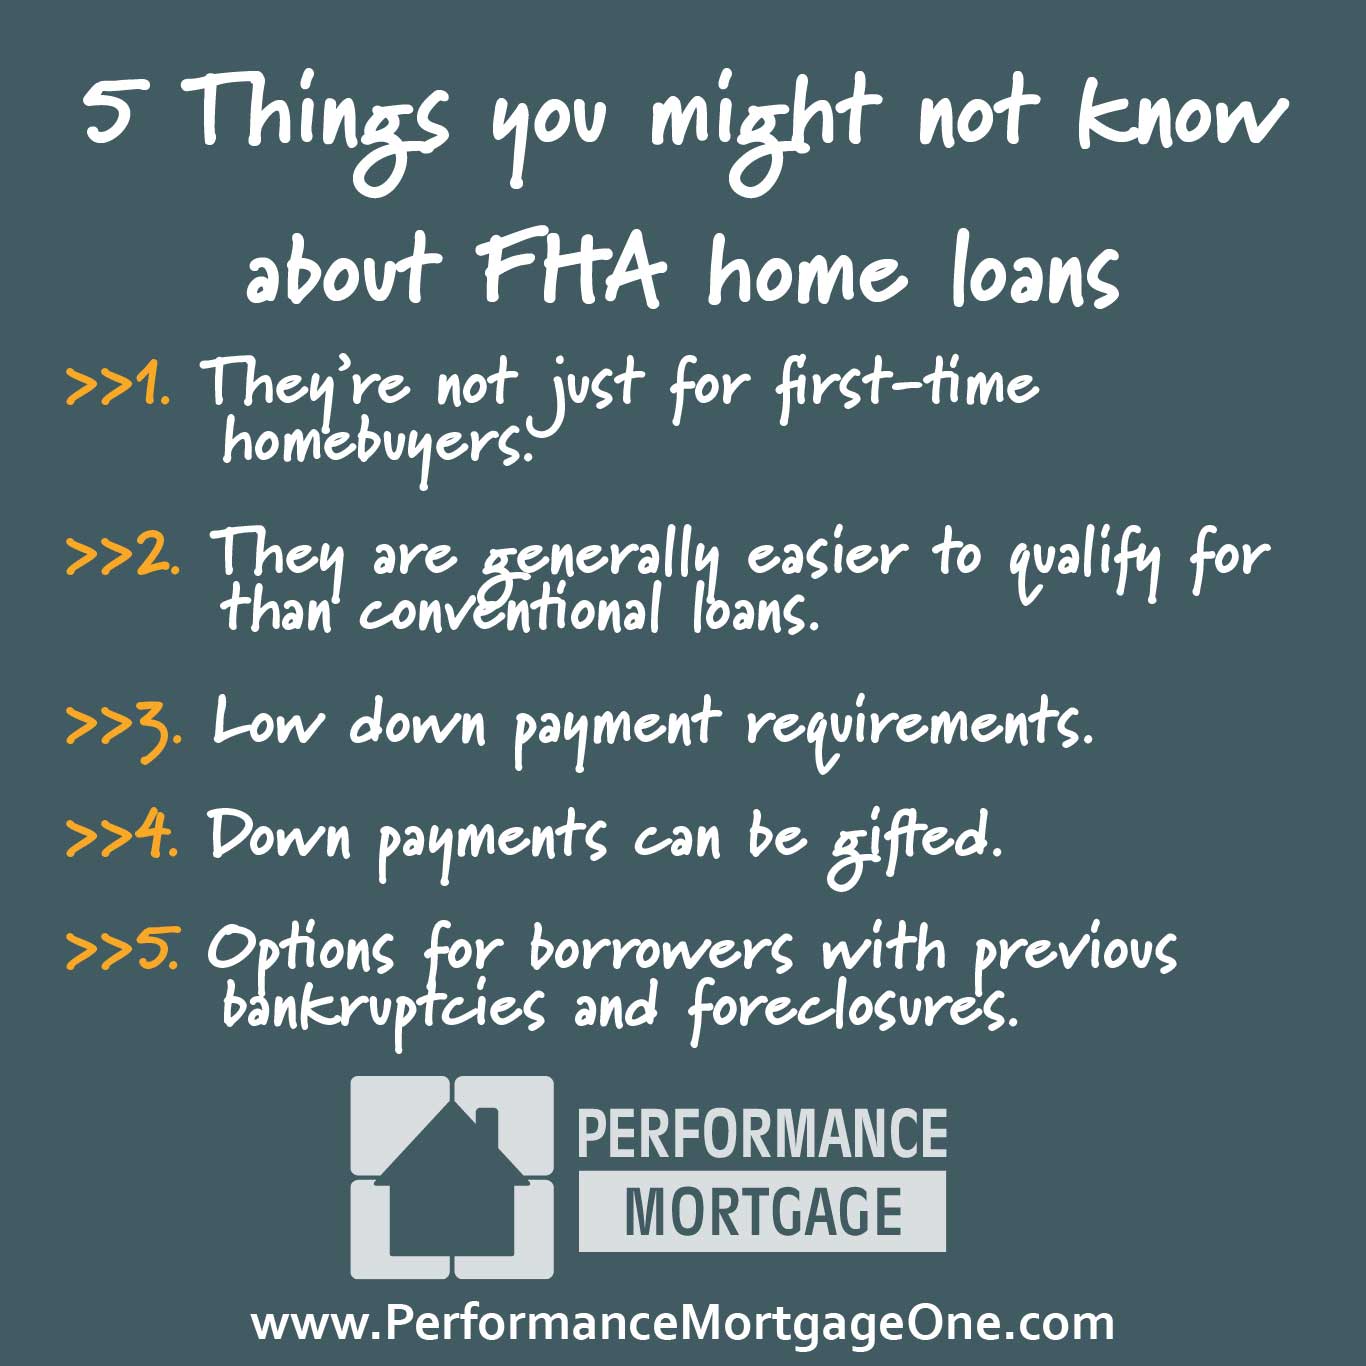 FHA-Home-Loans